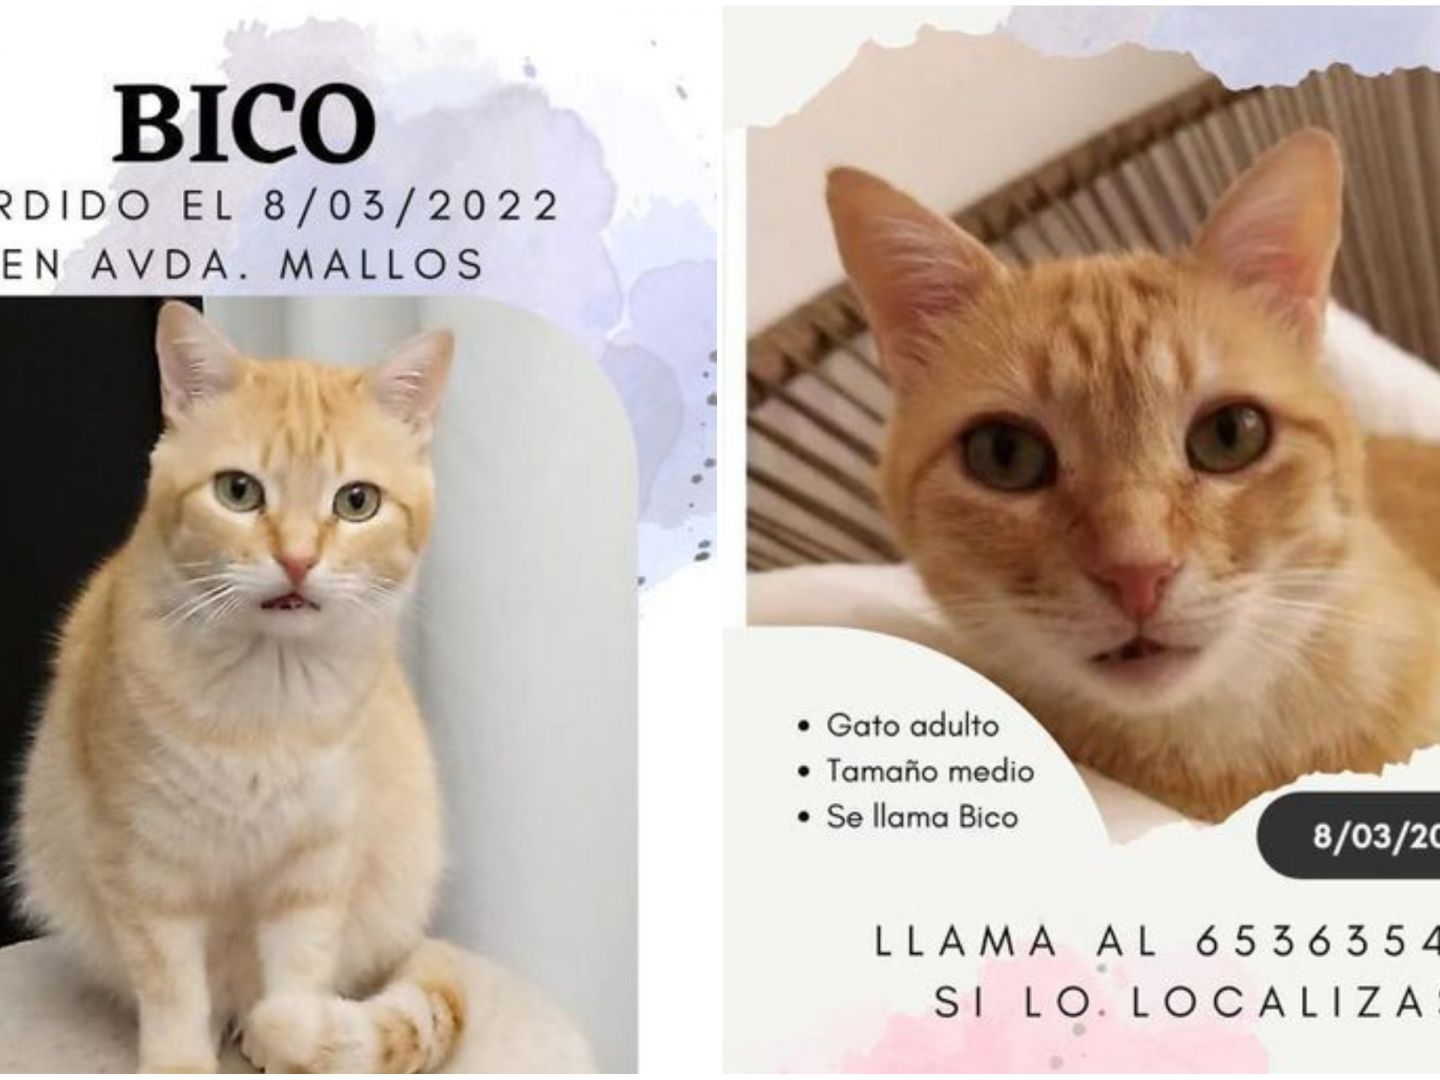 cuerda etiqueta caricia Piden ayuda para encontrar a Bico, un gato perdido en la zona de Os Mallos  en A Coruña